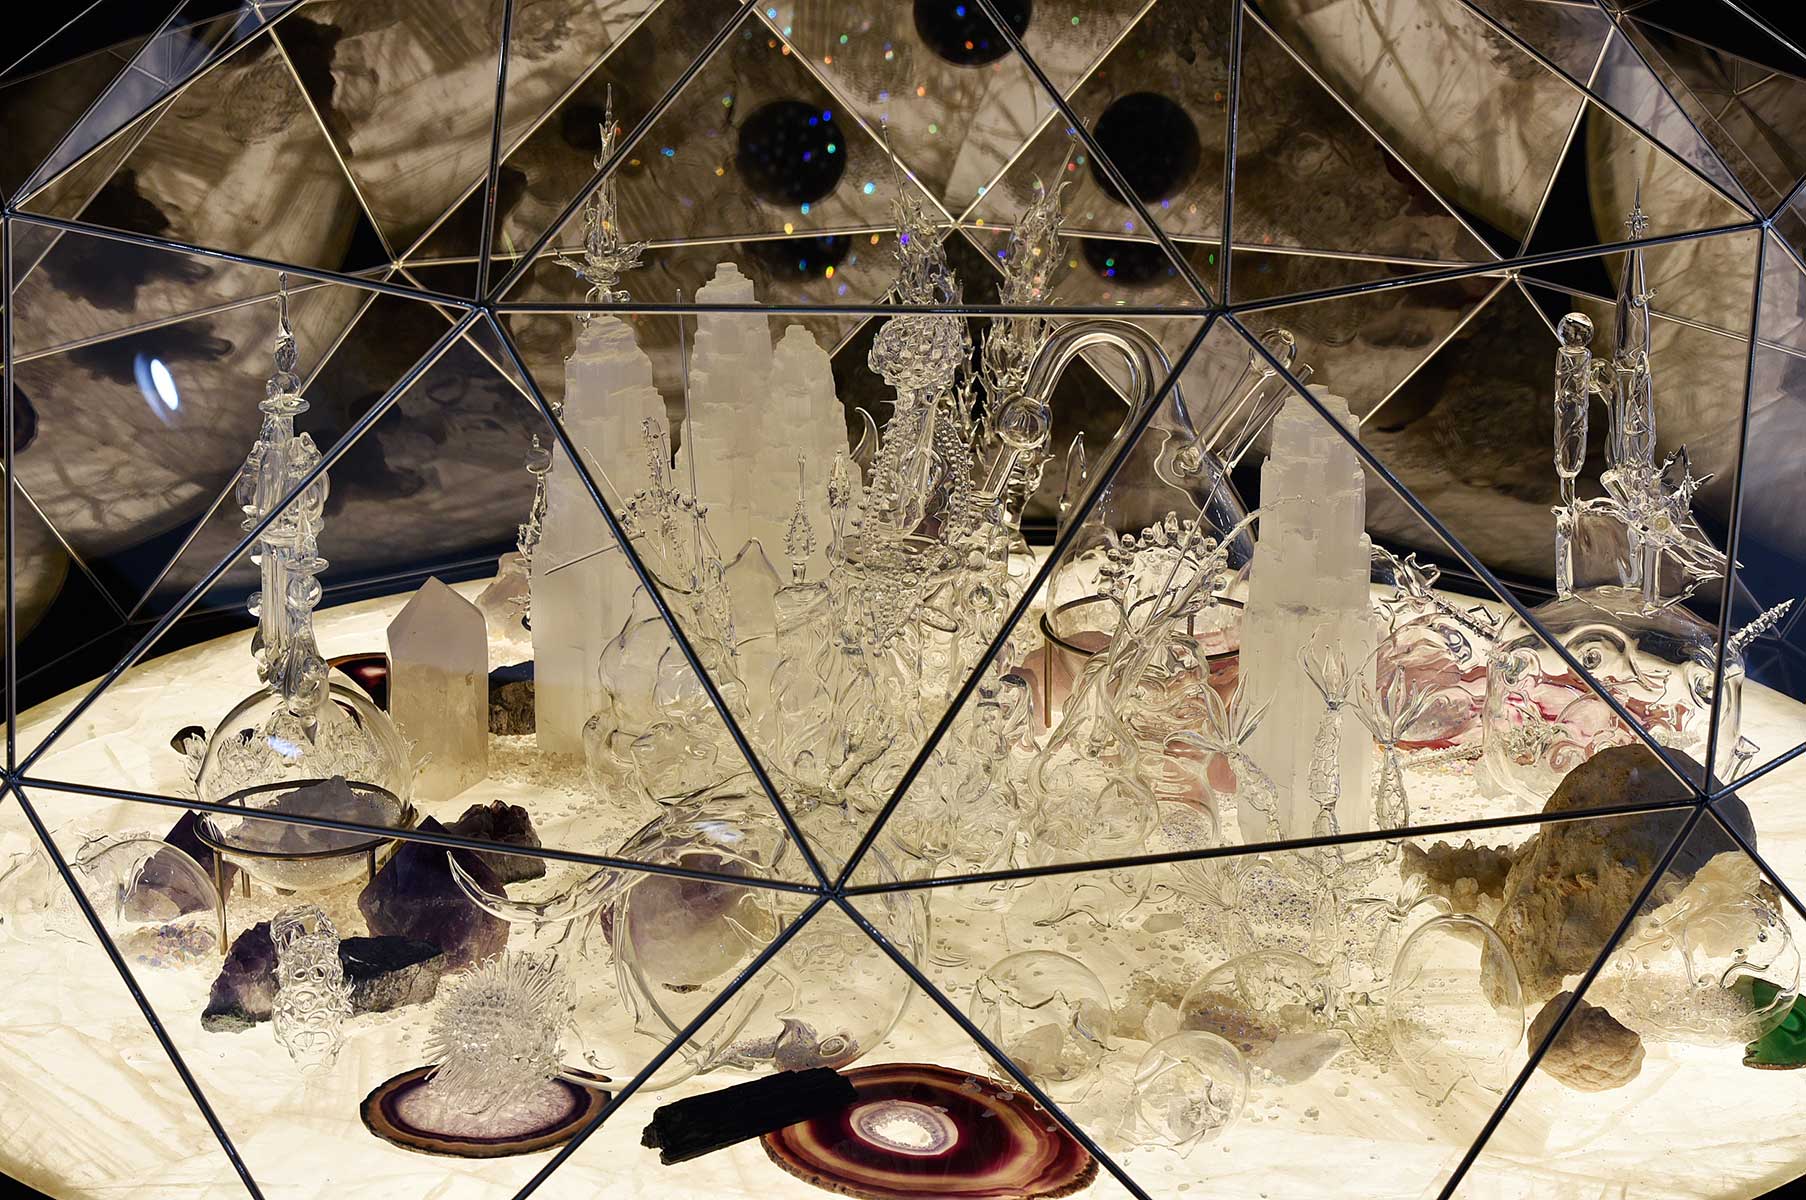 Die Ausstellung von Melli Ink unter der Bisazza Kuppel im Swarovski Kristallwelten Store